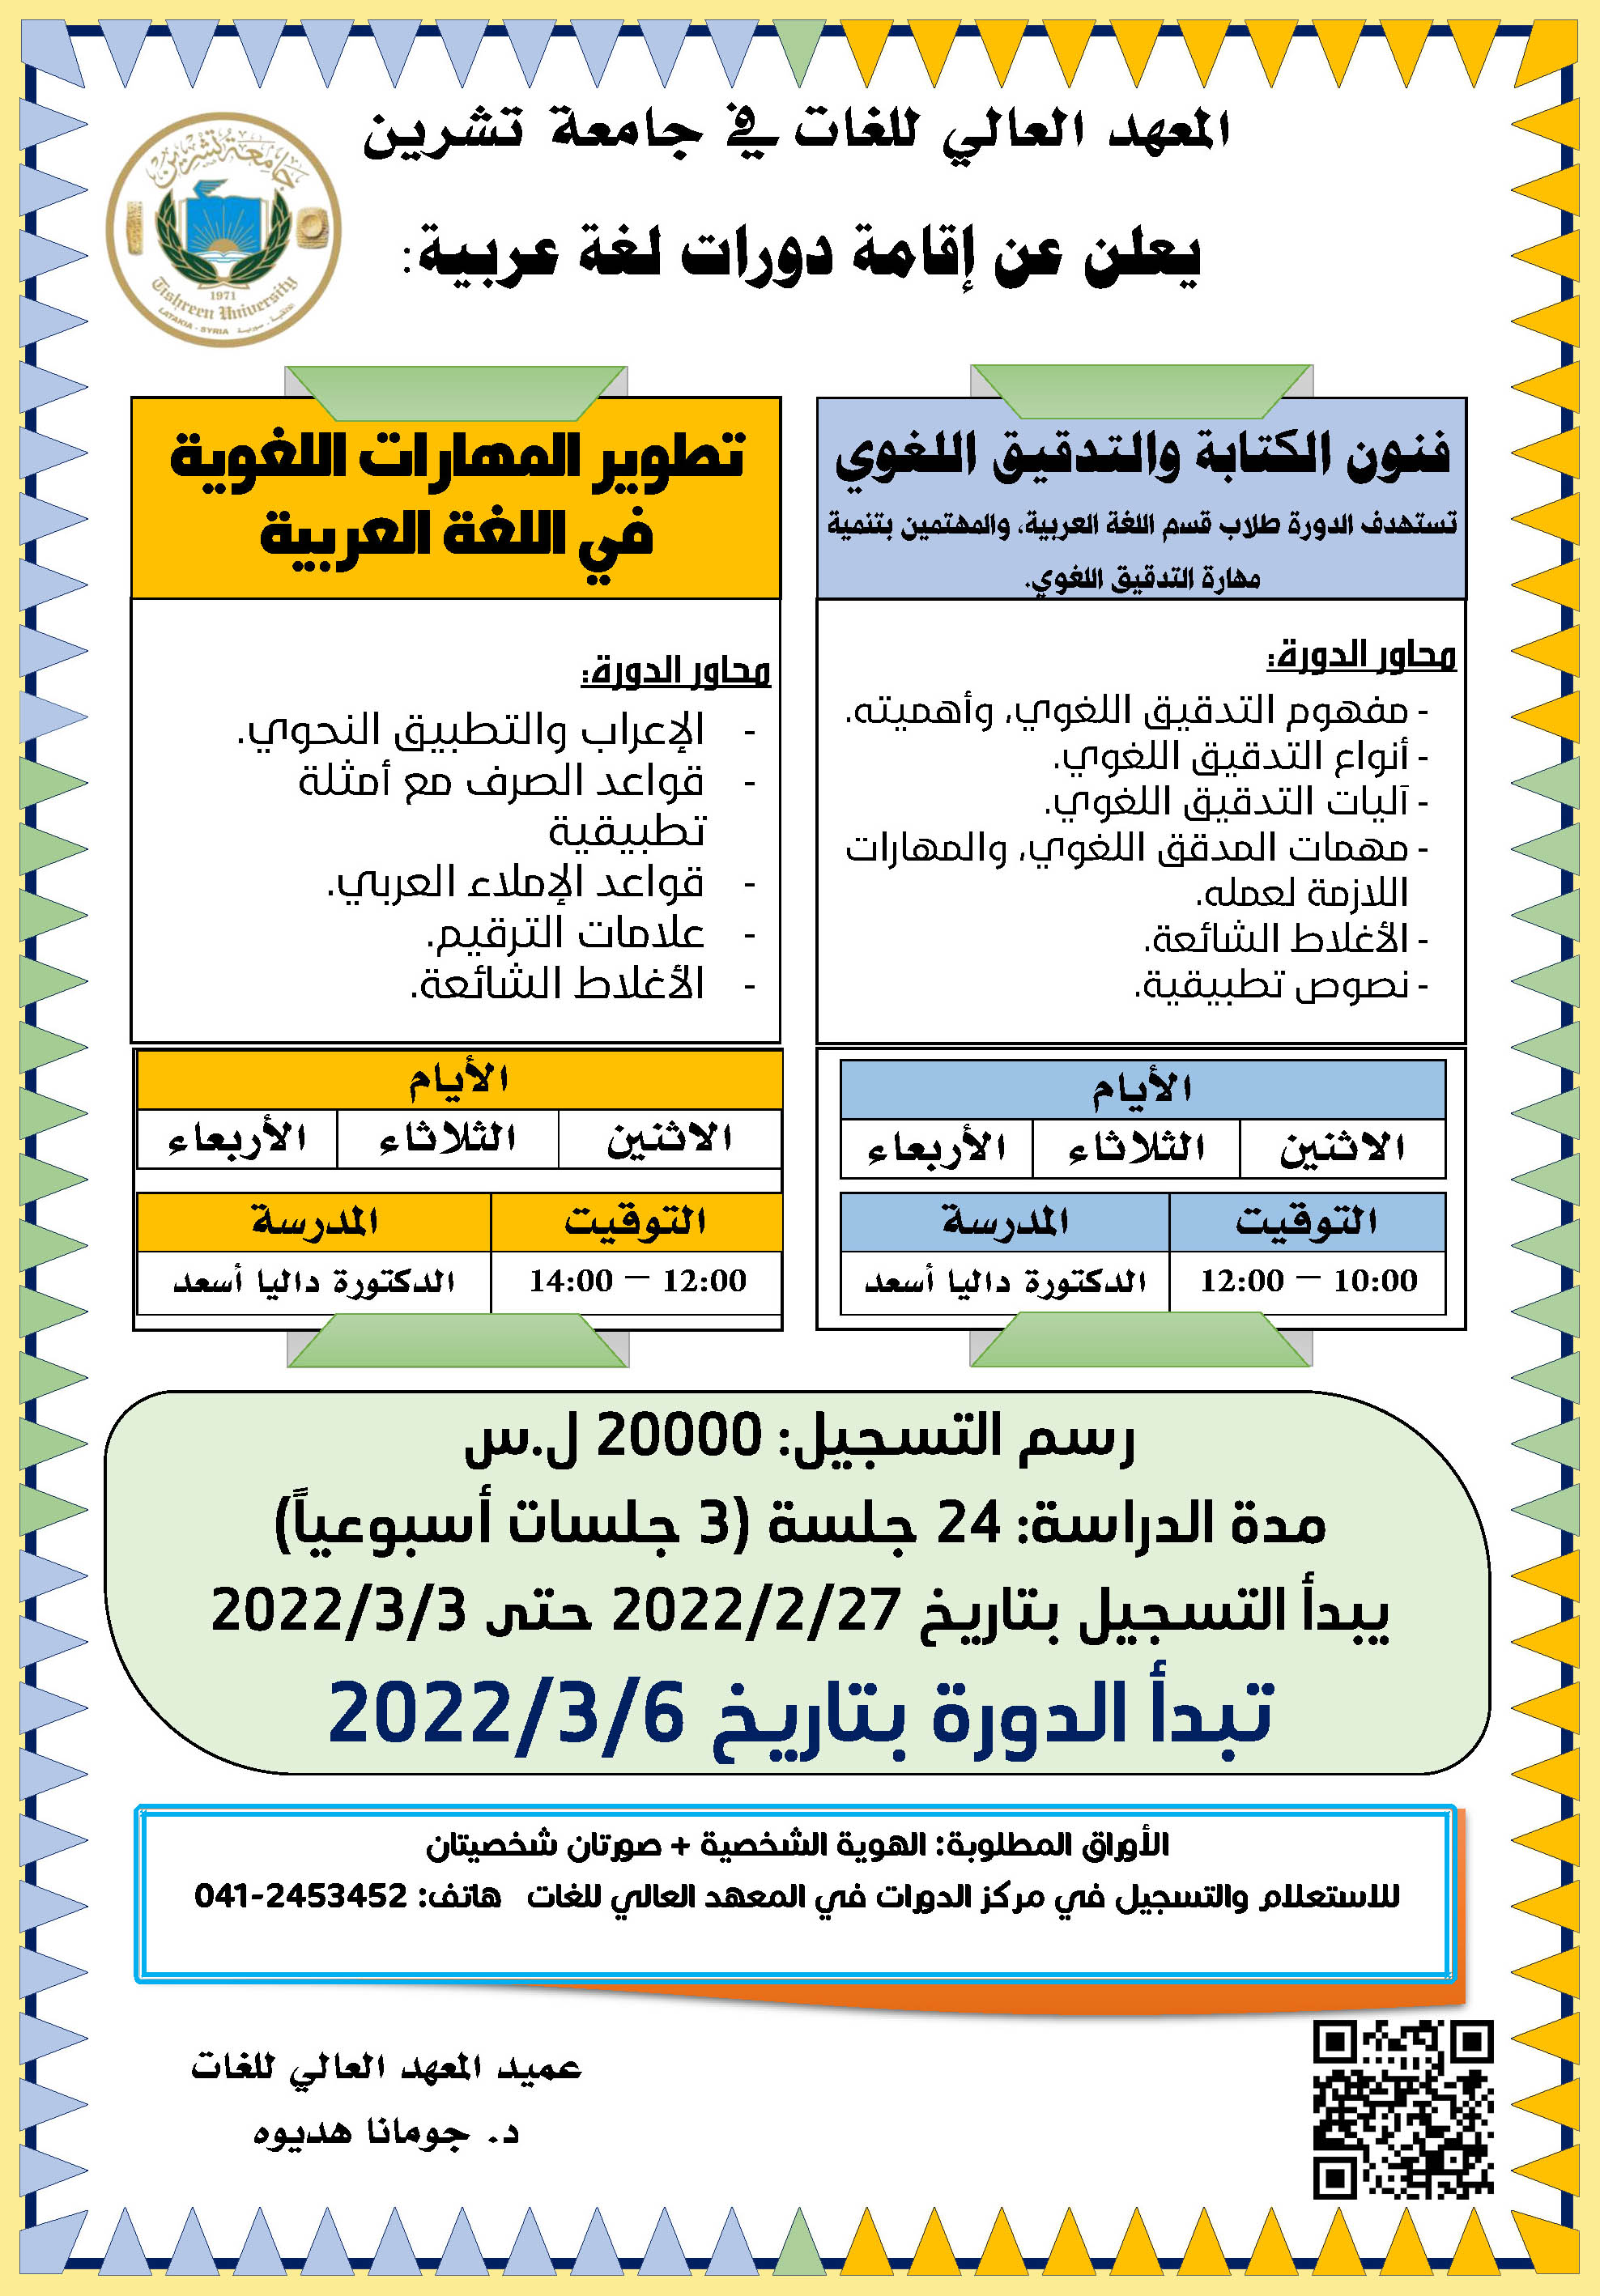 المعهد العالي للغات يعلن عن إقامة دورات في اللغة العربية تبدء بتاريخ 6-3-2022